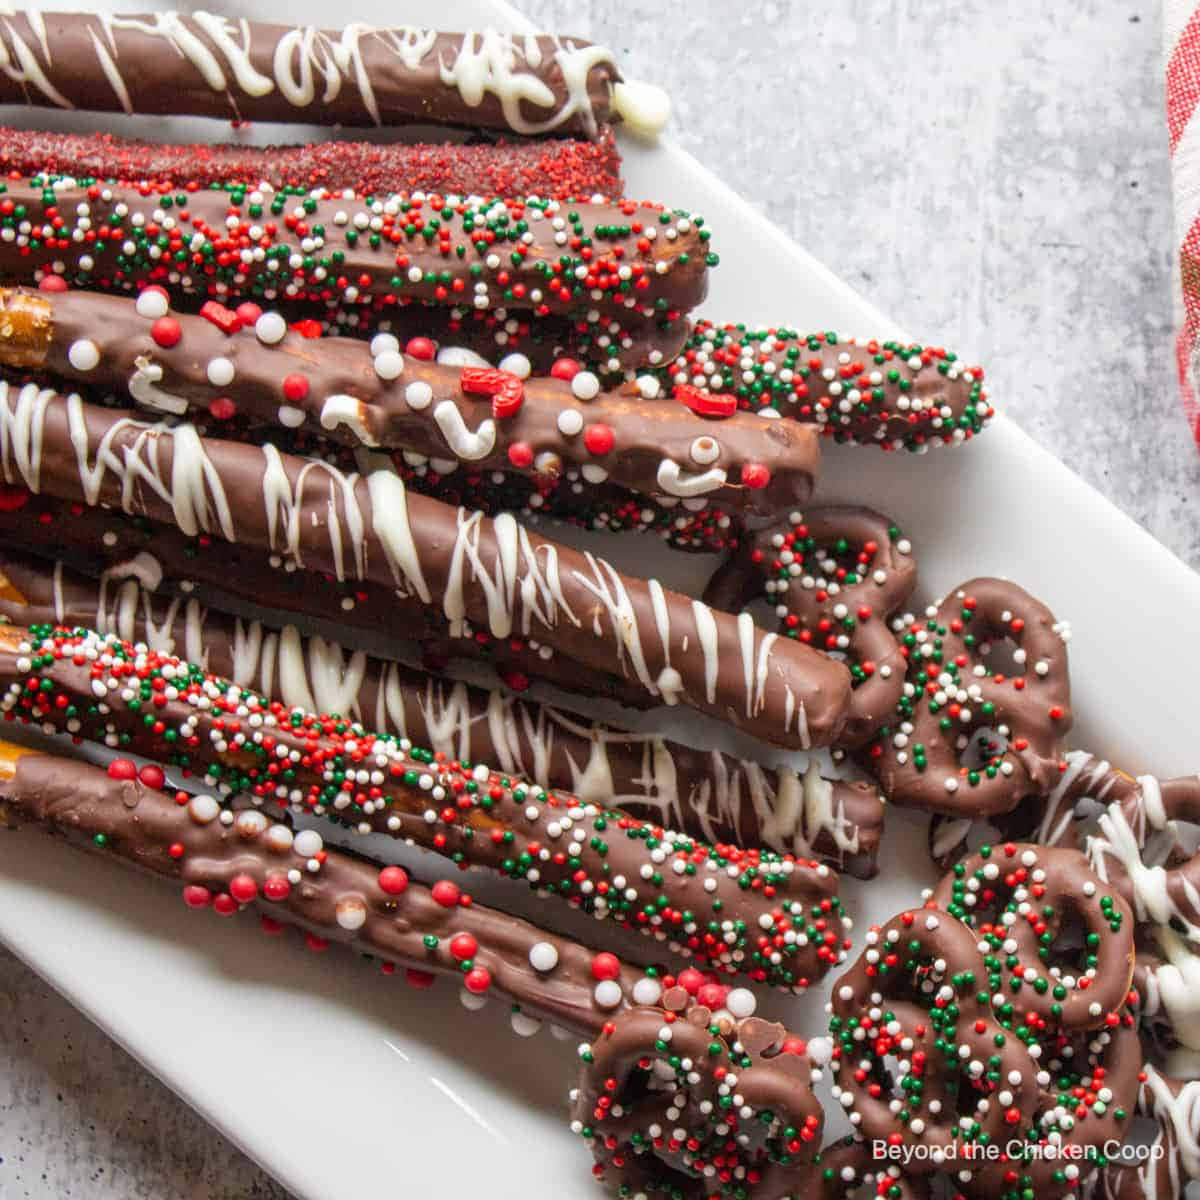 Chocolate Pretzel Sticks With Sprinkles On A White Plate